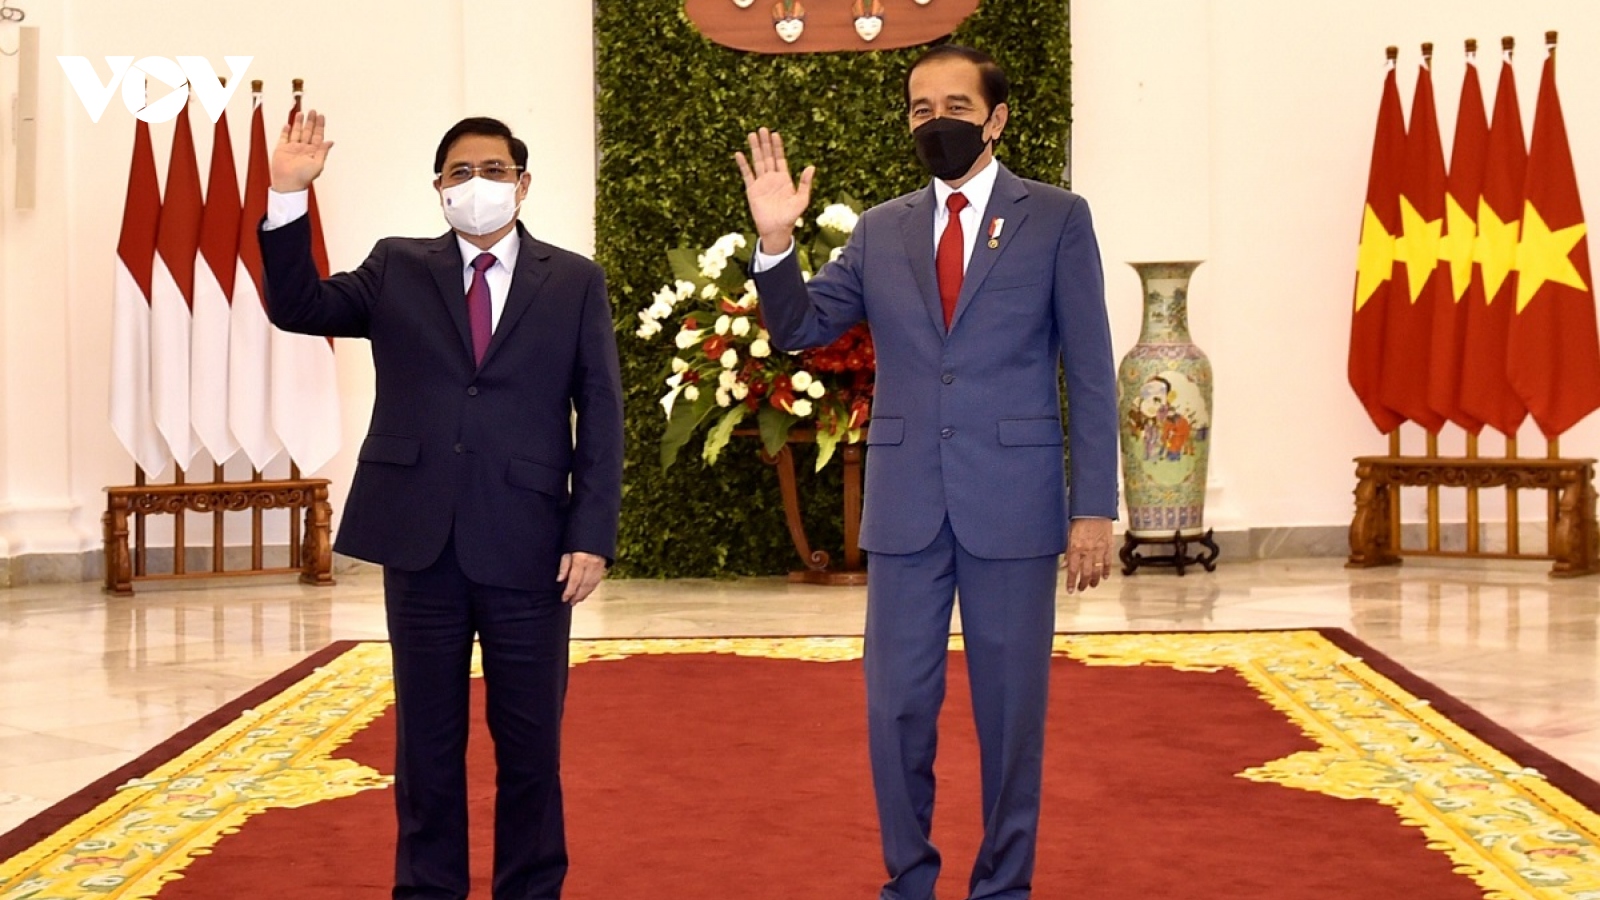 Thủ tướng Phạm Minh Chính chào xã giao Tổng thống Indonesia Joko Widodo